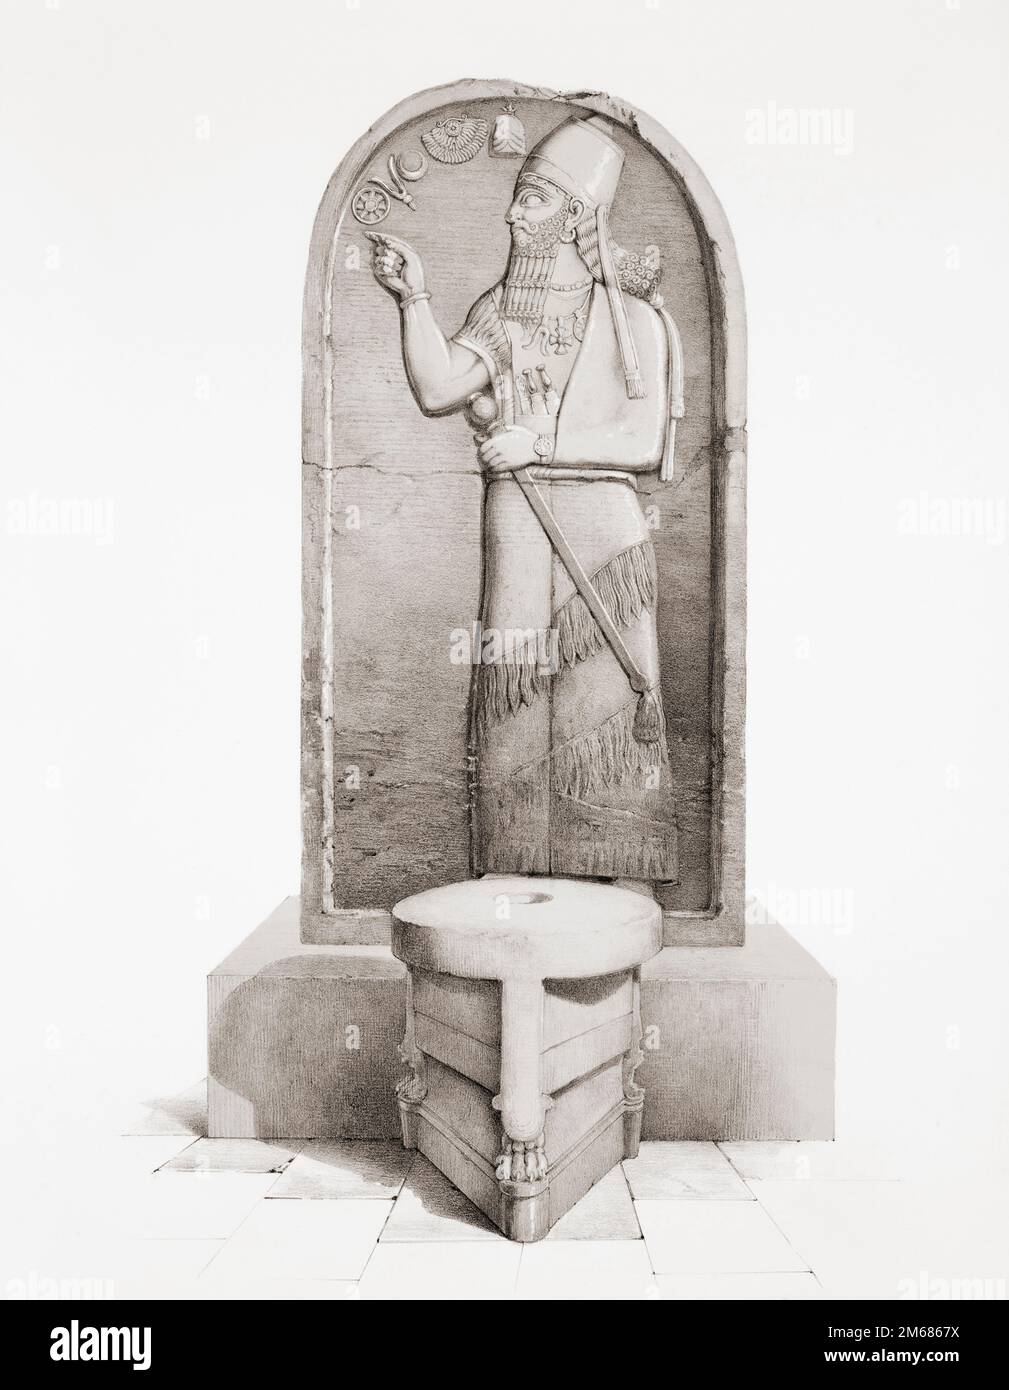 Die Stela von Shamshi-Adad V hinter einem Opferaltar aus Nimrud, dem antiken Assyrien, dem modernen Irak. Shamshi-Adad V war König von Assyrien von 824 - 811 v. Chr., dem Jahr seines Todes. Die fast 2 Meter hohe Sandsteinstela befindet sich jetzt im British Museum, London. Nach einem Werk aus dem 19. Jahrhundert von Sir Austen Henry Layard. Stockfoto